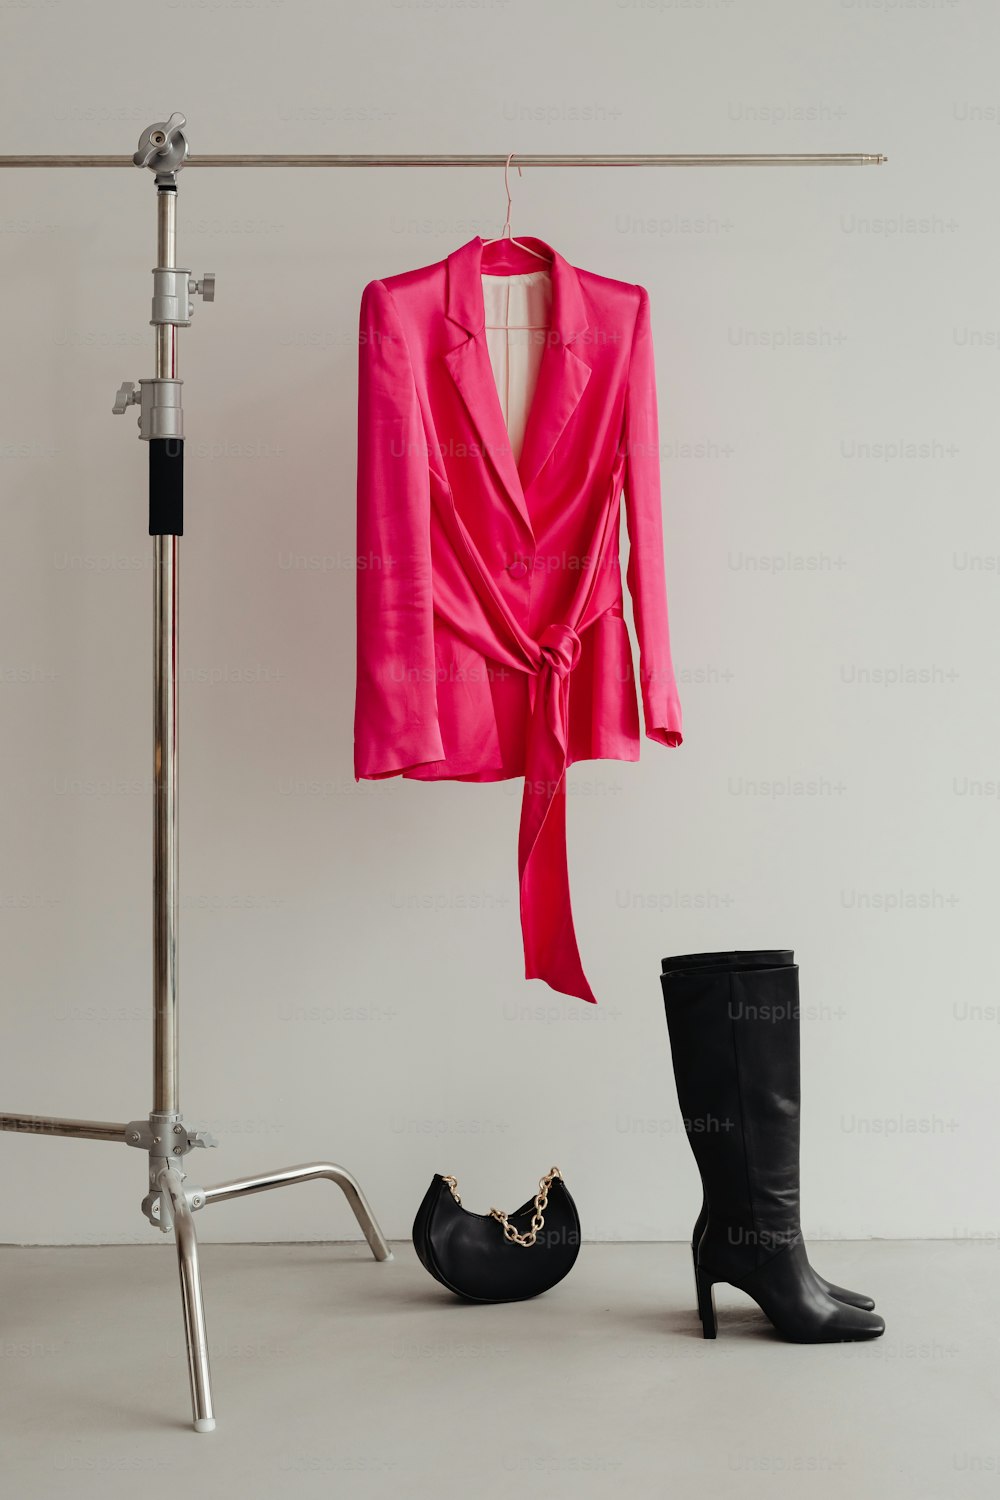 Un par de botas negras y una chaqueta rosa colgada en un perchero